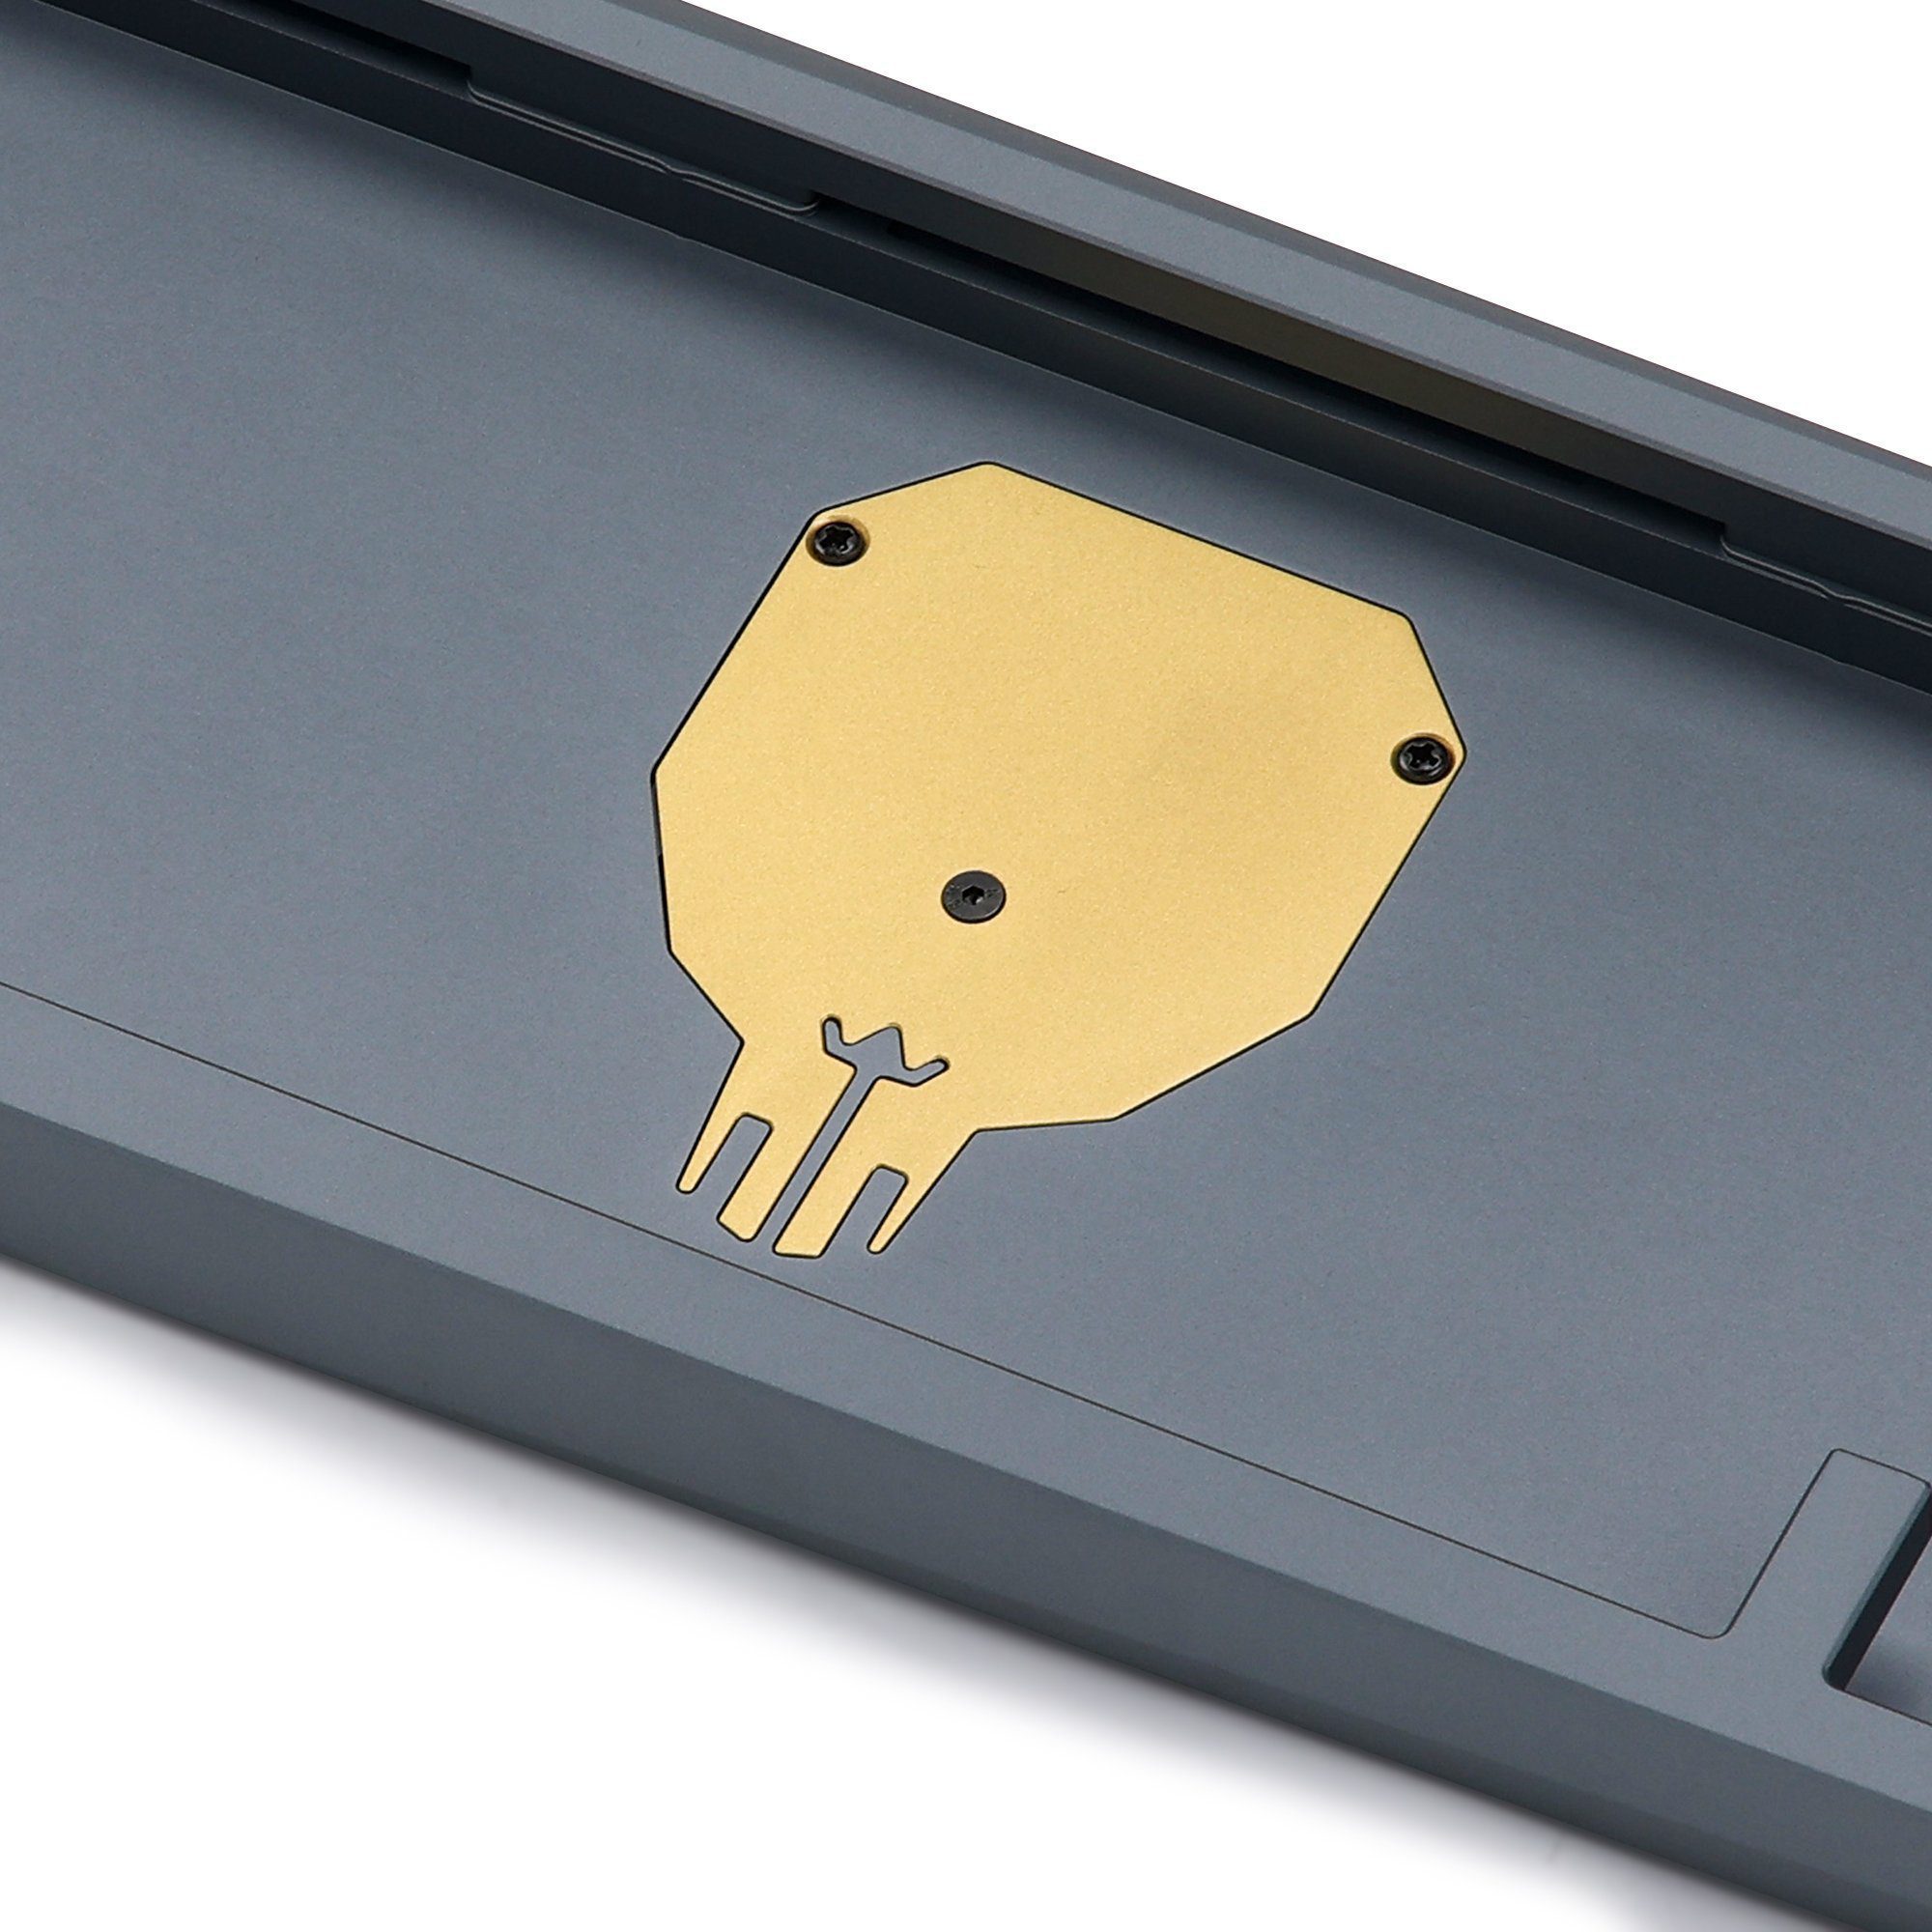 [Solderable Kit] KBDfans Blade65 R2 With Brass Skull Badge Aluminum Mechanical Keyboard Kit